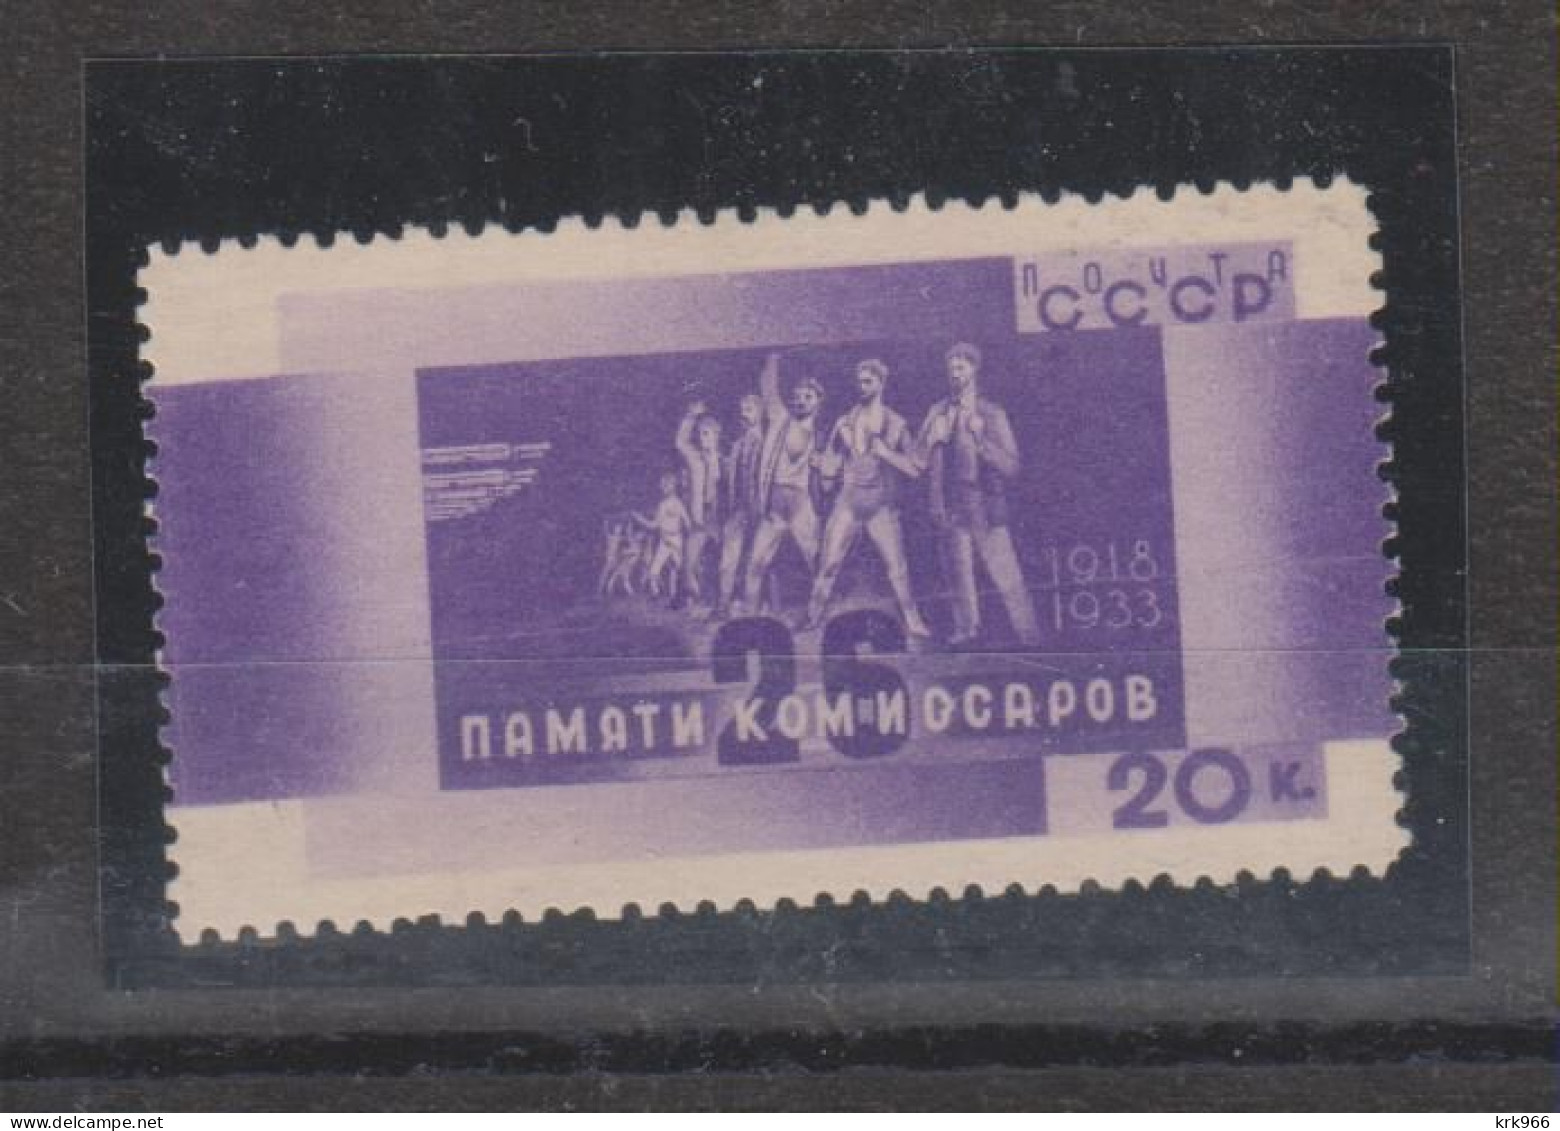 RUSSIA 1933 20 K Nice Stamp   MNH - Ongebruikt